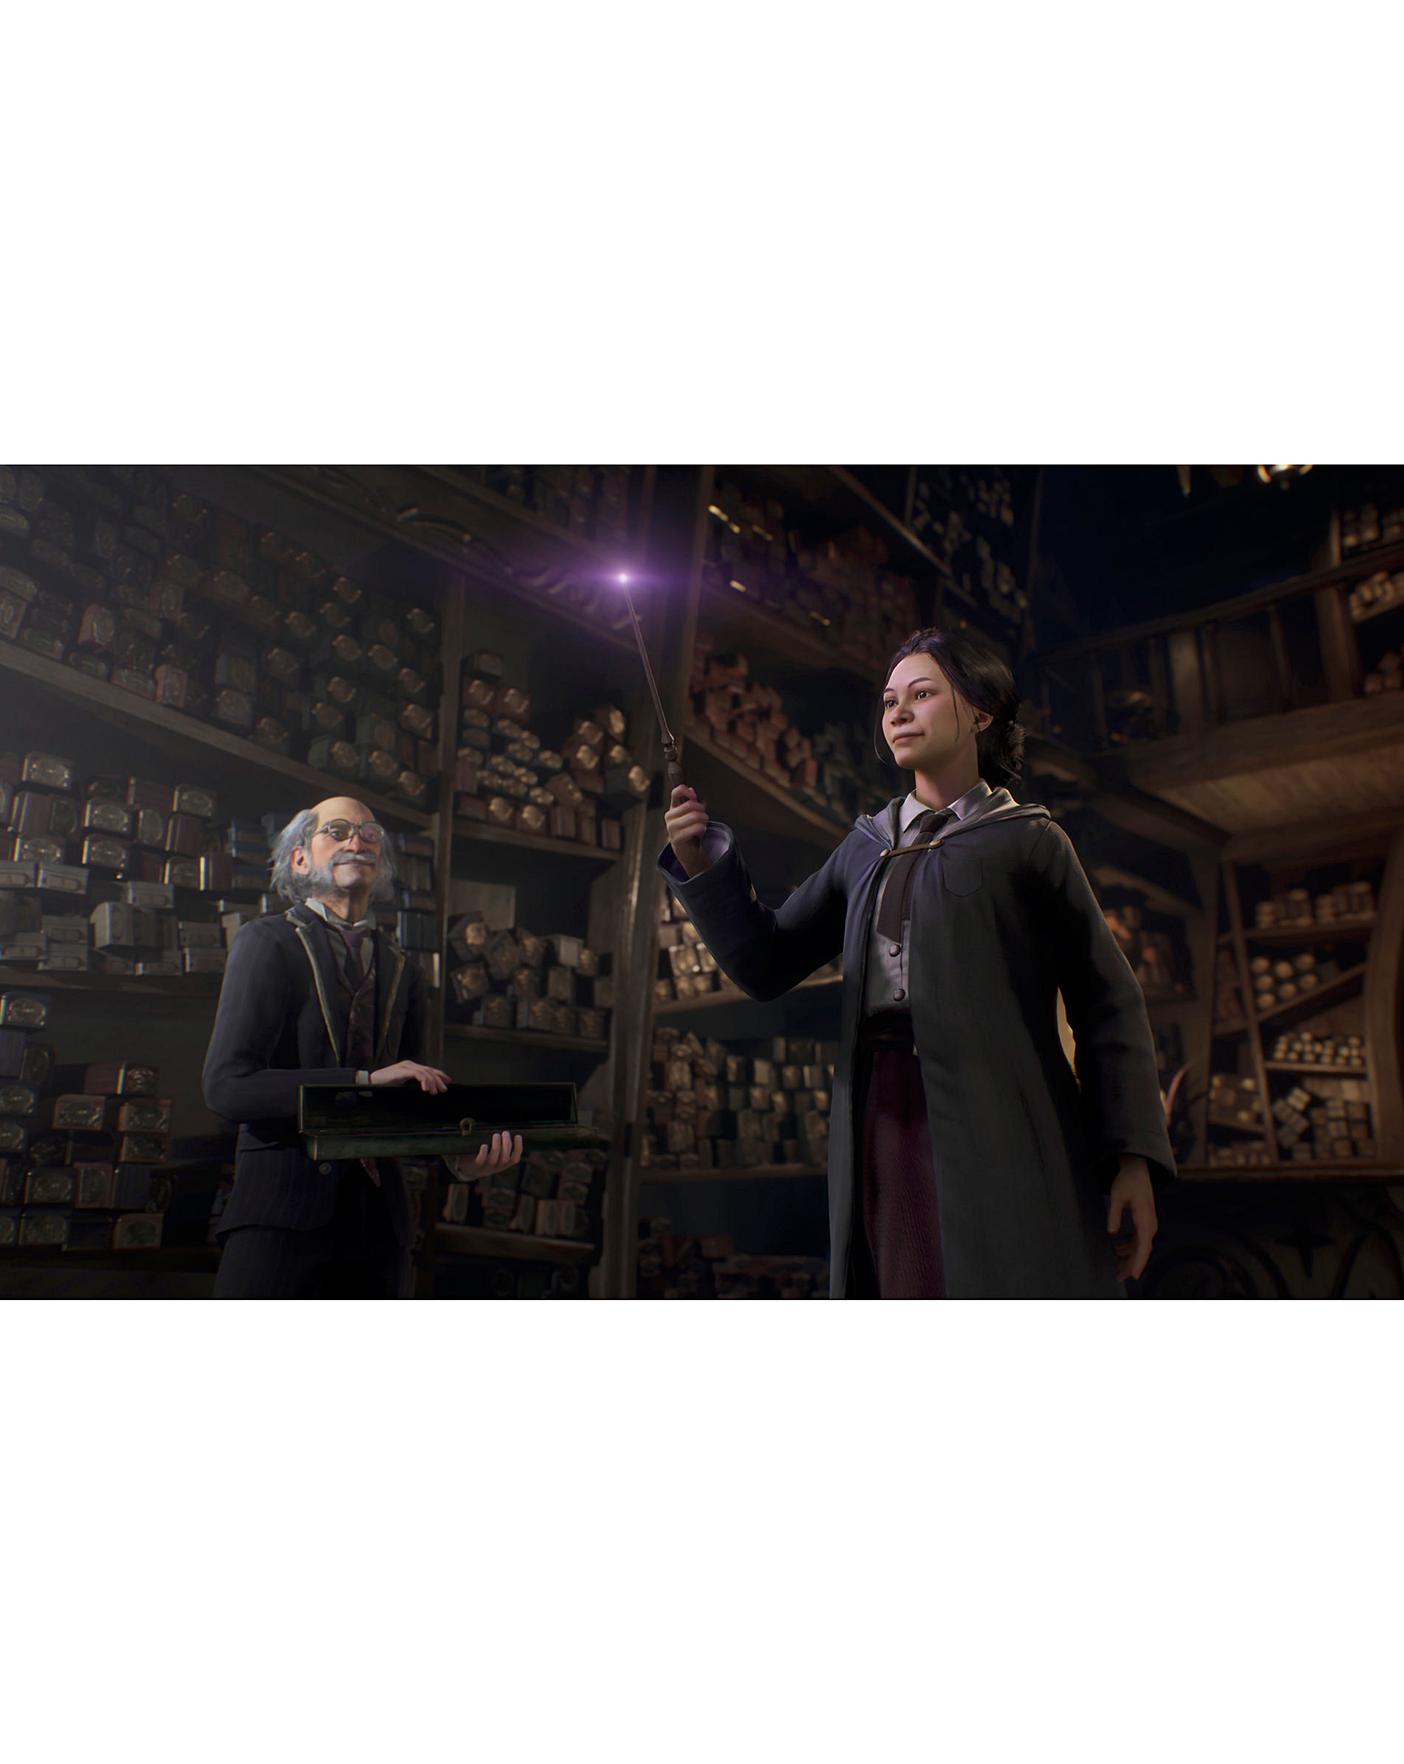 Hogwarts legacy: Encontre Promoções e o Menor Preço No Zoom